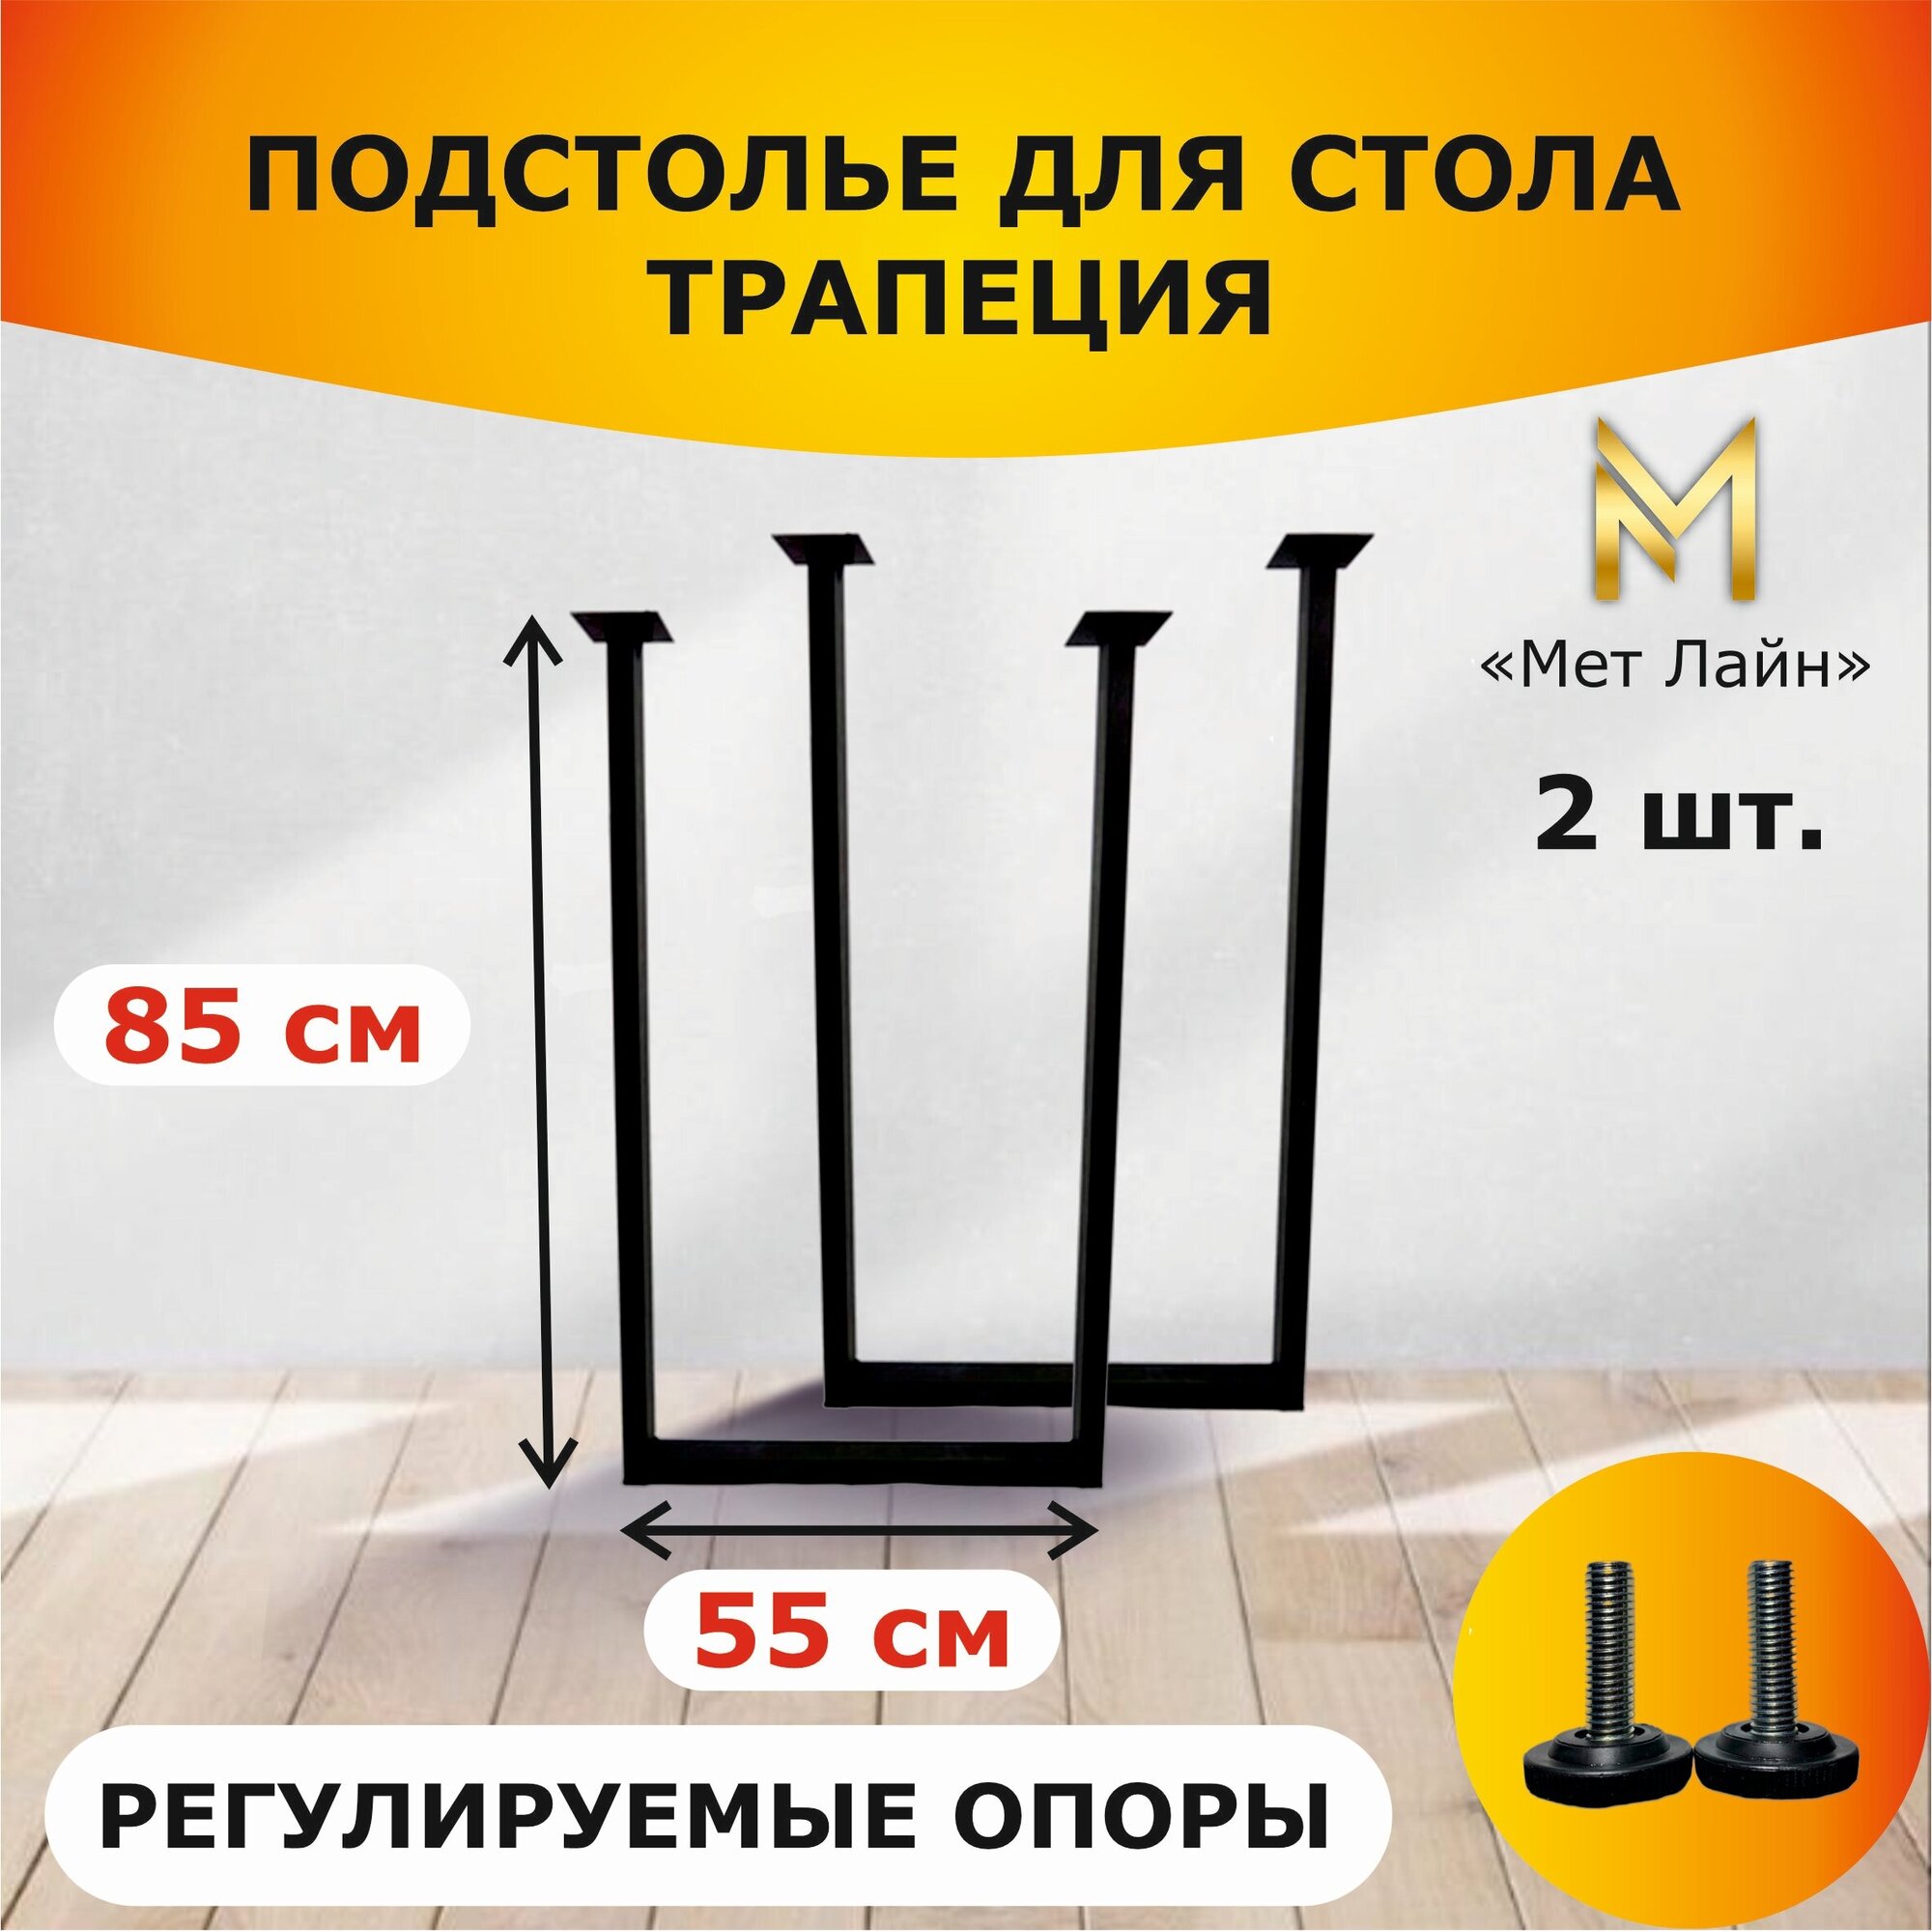 Подстолье для стола лофт "Трапеция" металлическое, квадратное, 85 см * 55 см, чёрное, комплект 2 штуки, ножки для стола лофт - фотография № 1